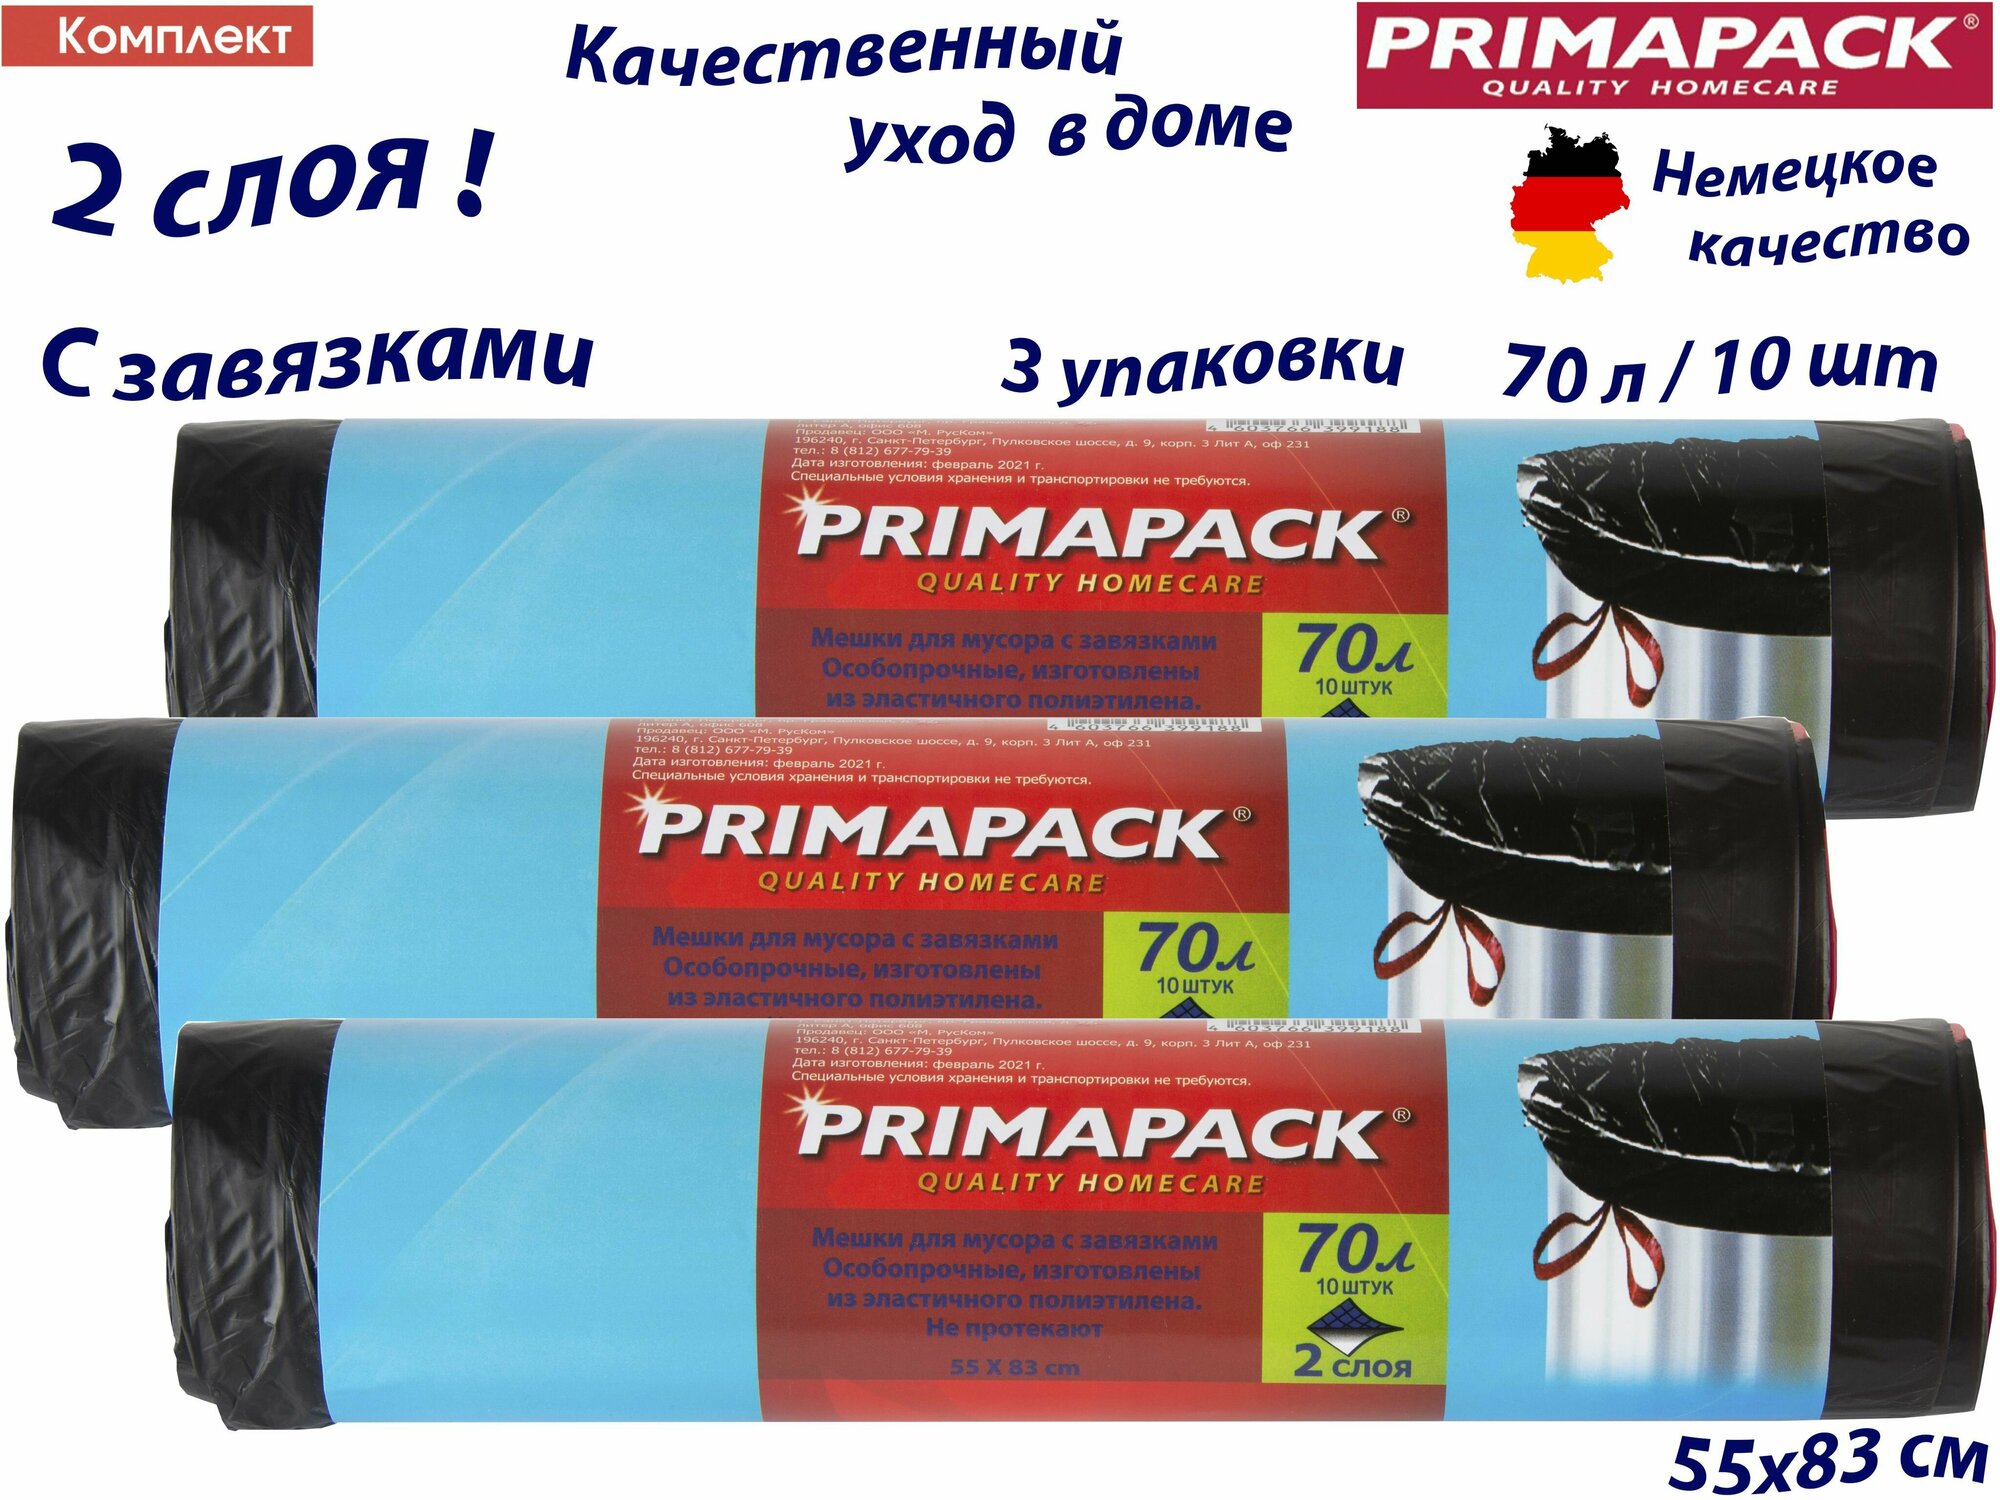 Комплект: 3 упаковки Мешки д/мусора Примапак 70л/10шт. с завязками, черные